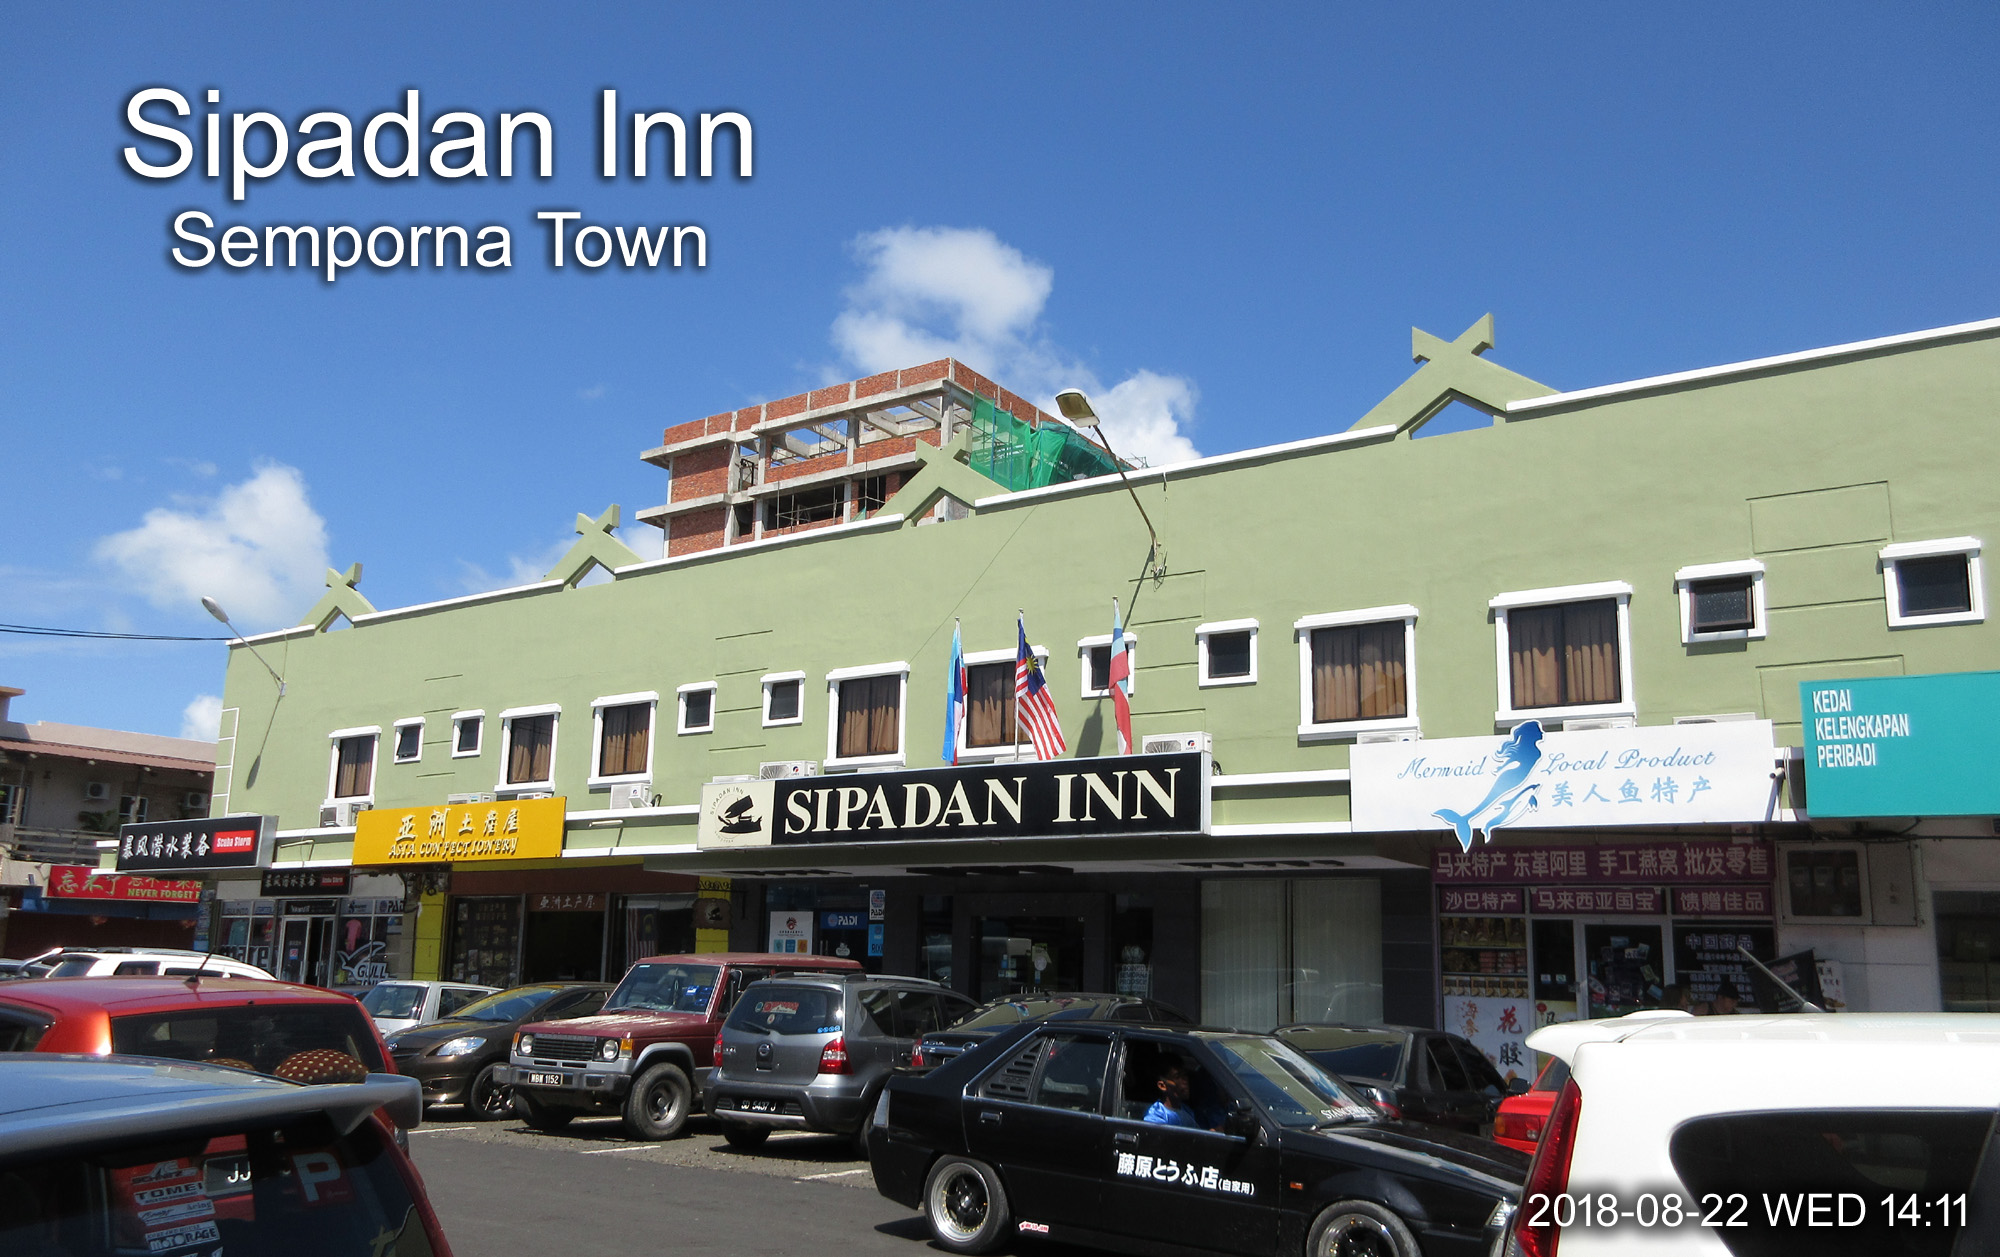 Sipadan Inn, Semporna Town